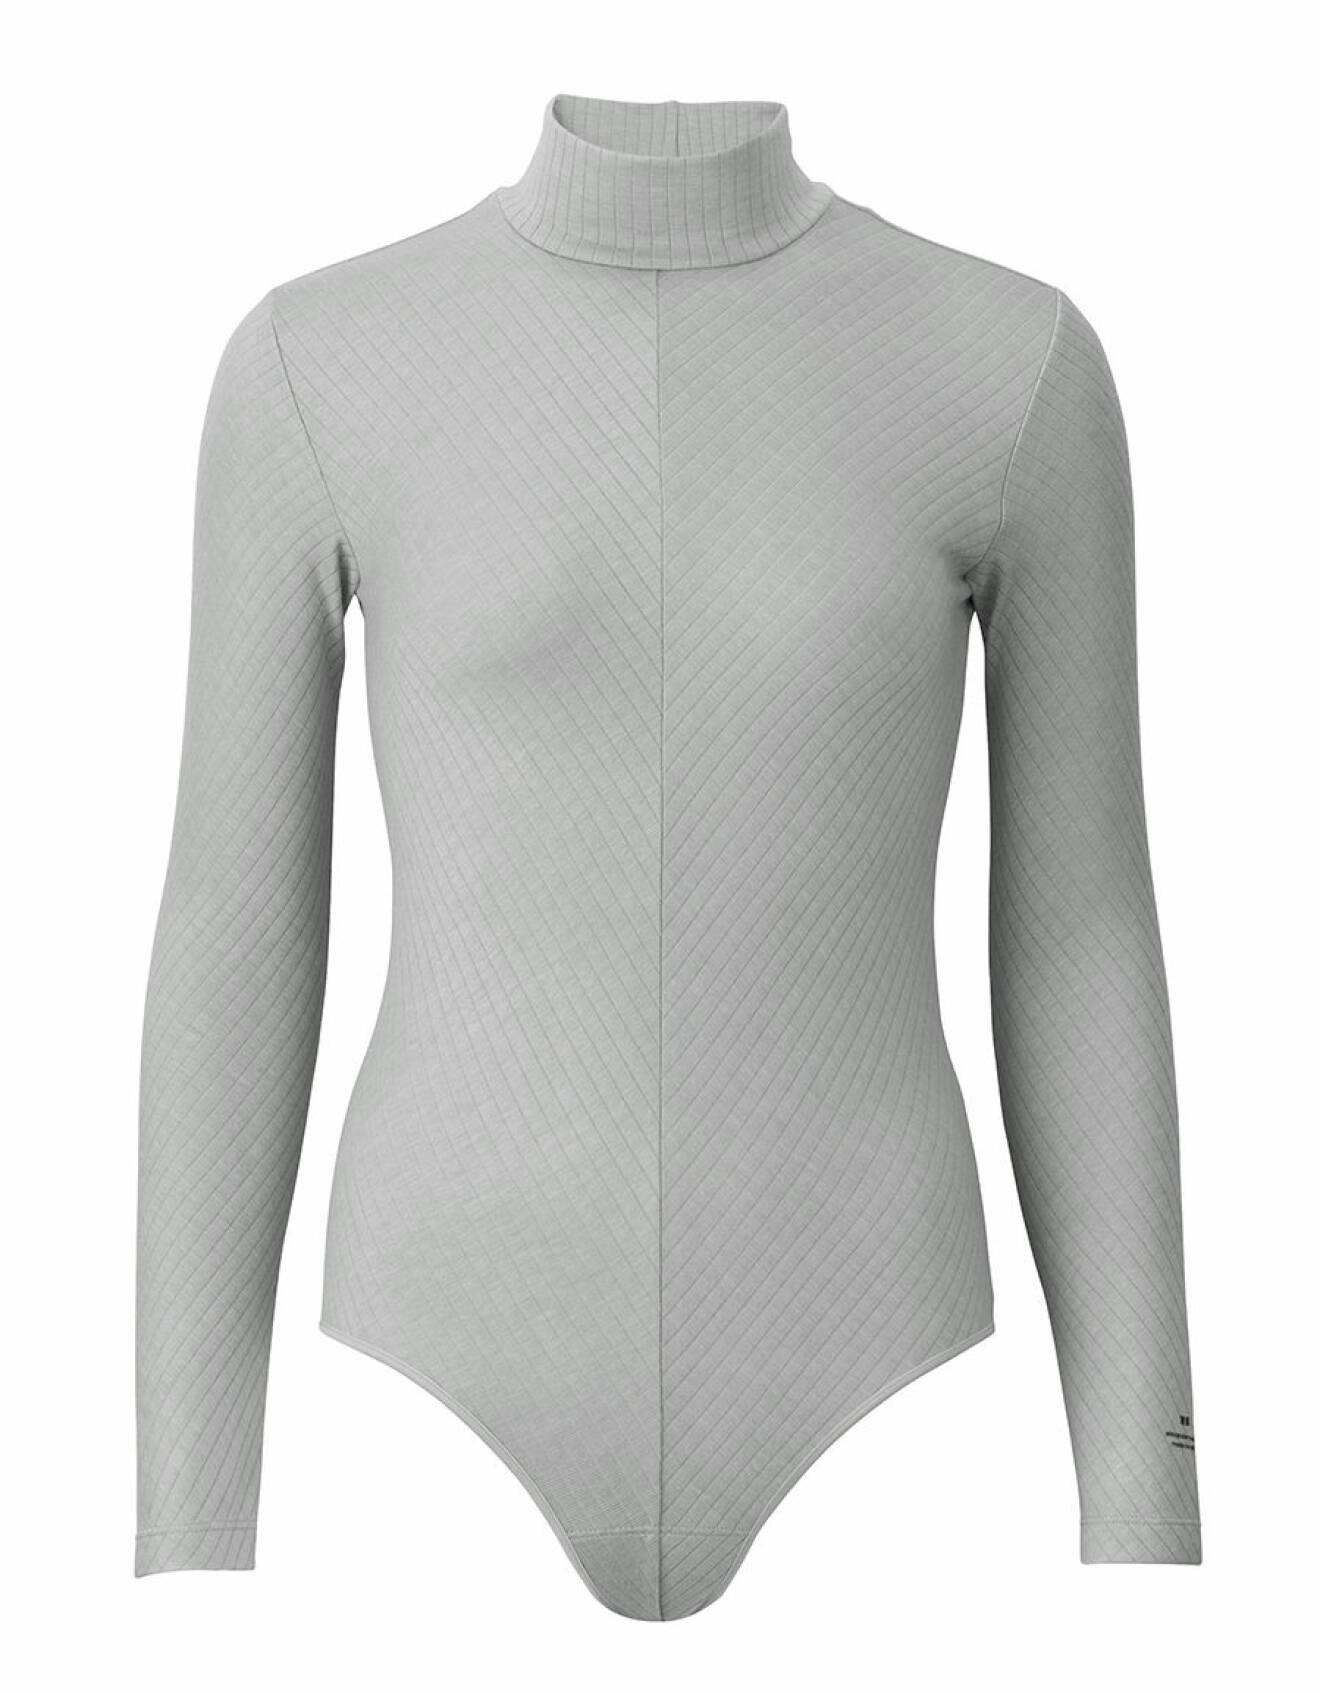 Bodysuit modell varmare, 499 kr, finns i svart, vitt och grå.